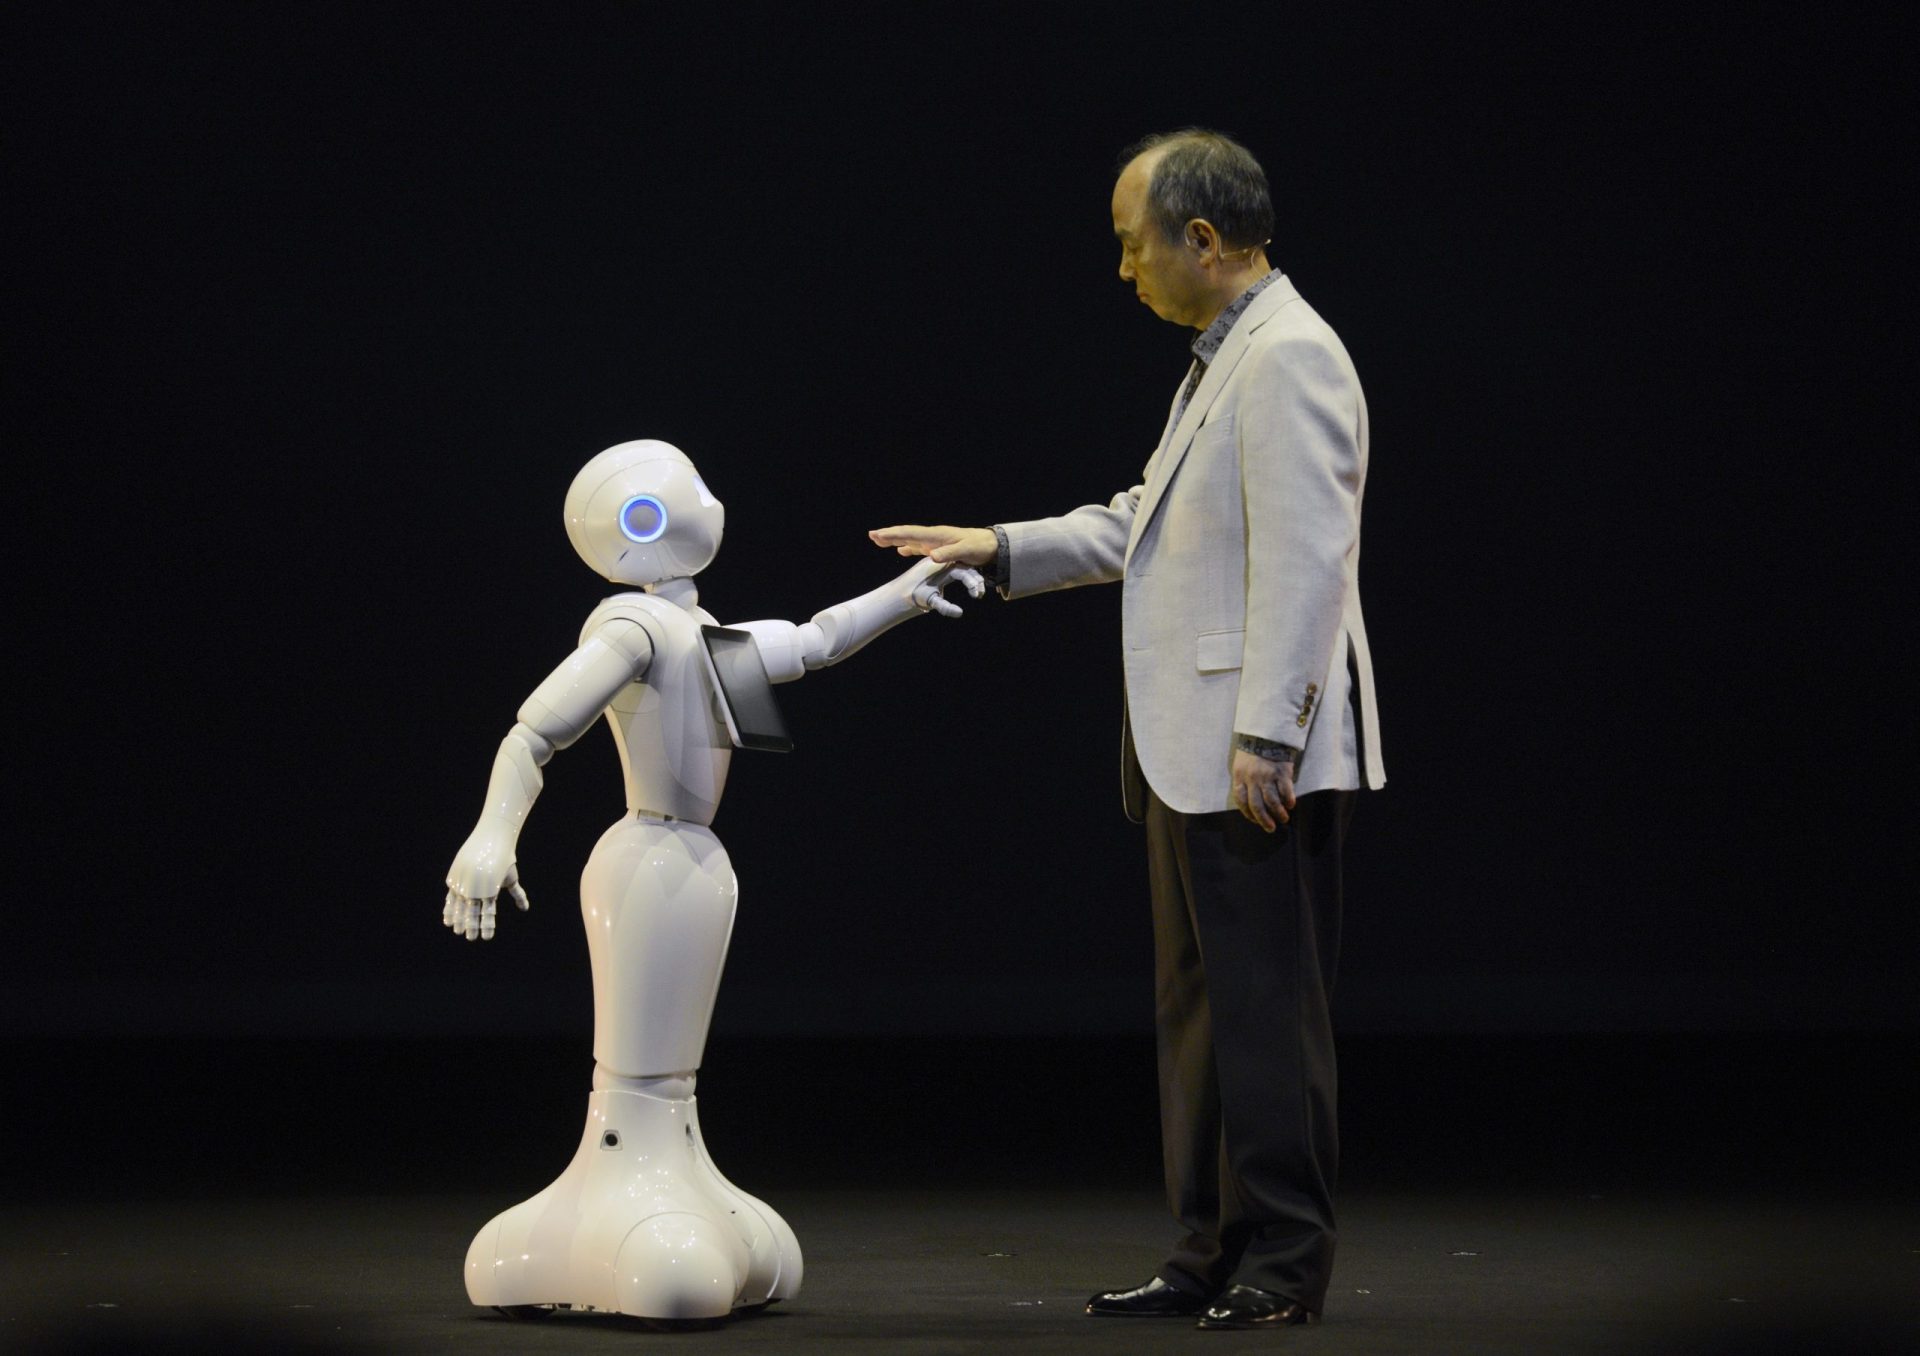 Conheça Pepper, o primeiro robô a ler sentimentos